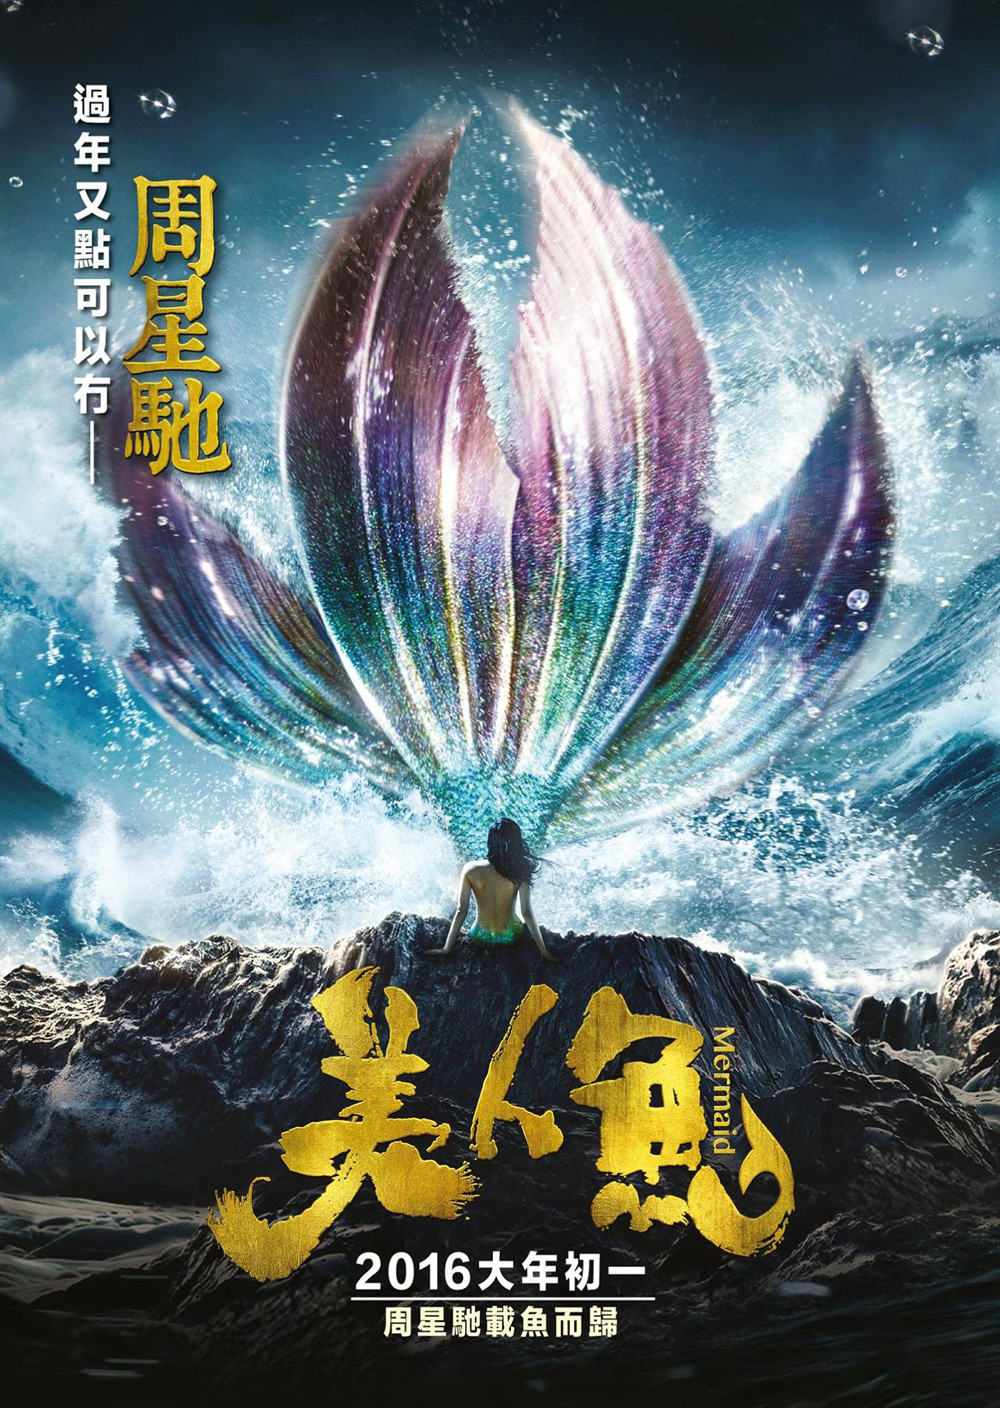 Poster Phim Mỹ nhân ngư (The Mermaid)